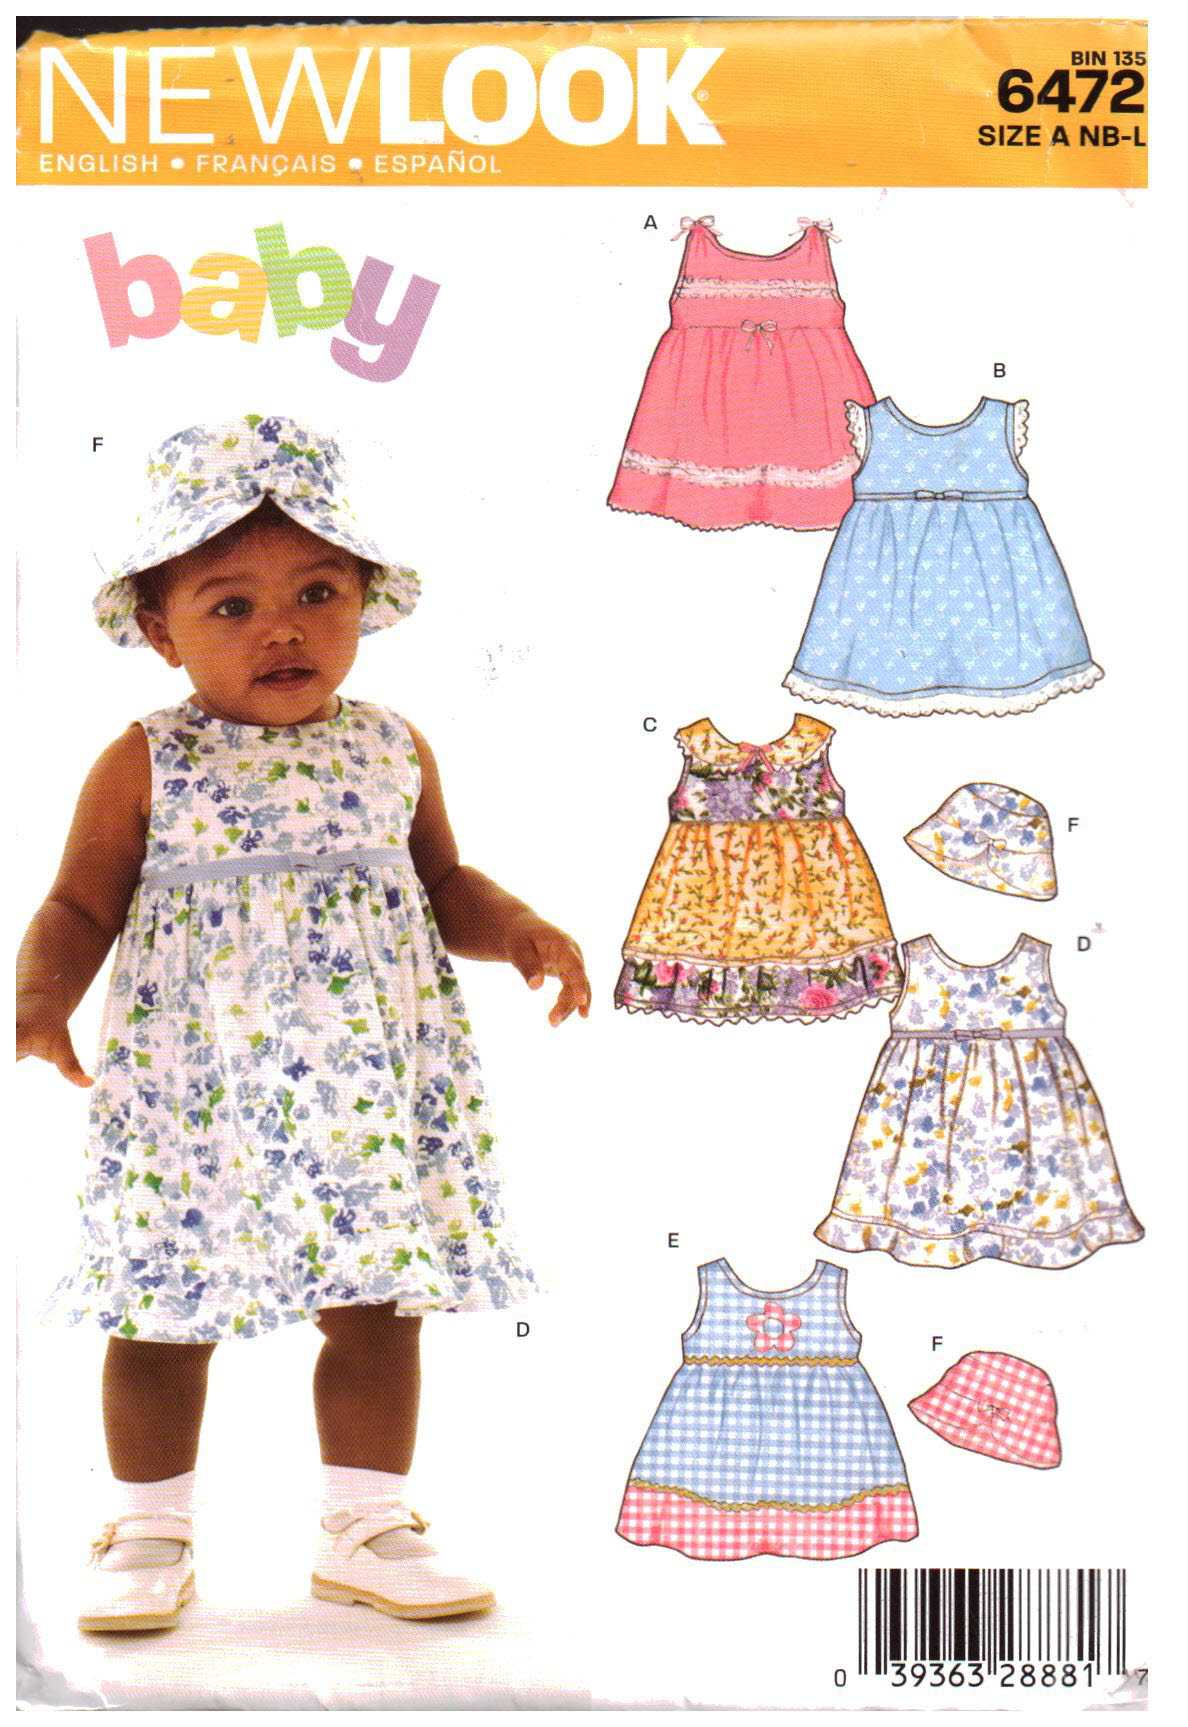 Details about   New Look/Simplicity Babies Romper,Sundress,Hat Pattern 6111 Size NB-L UNCUT 